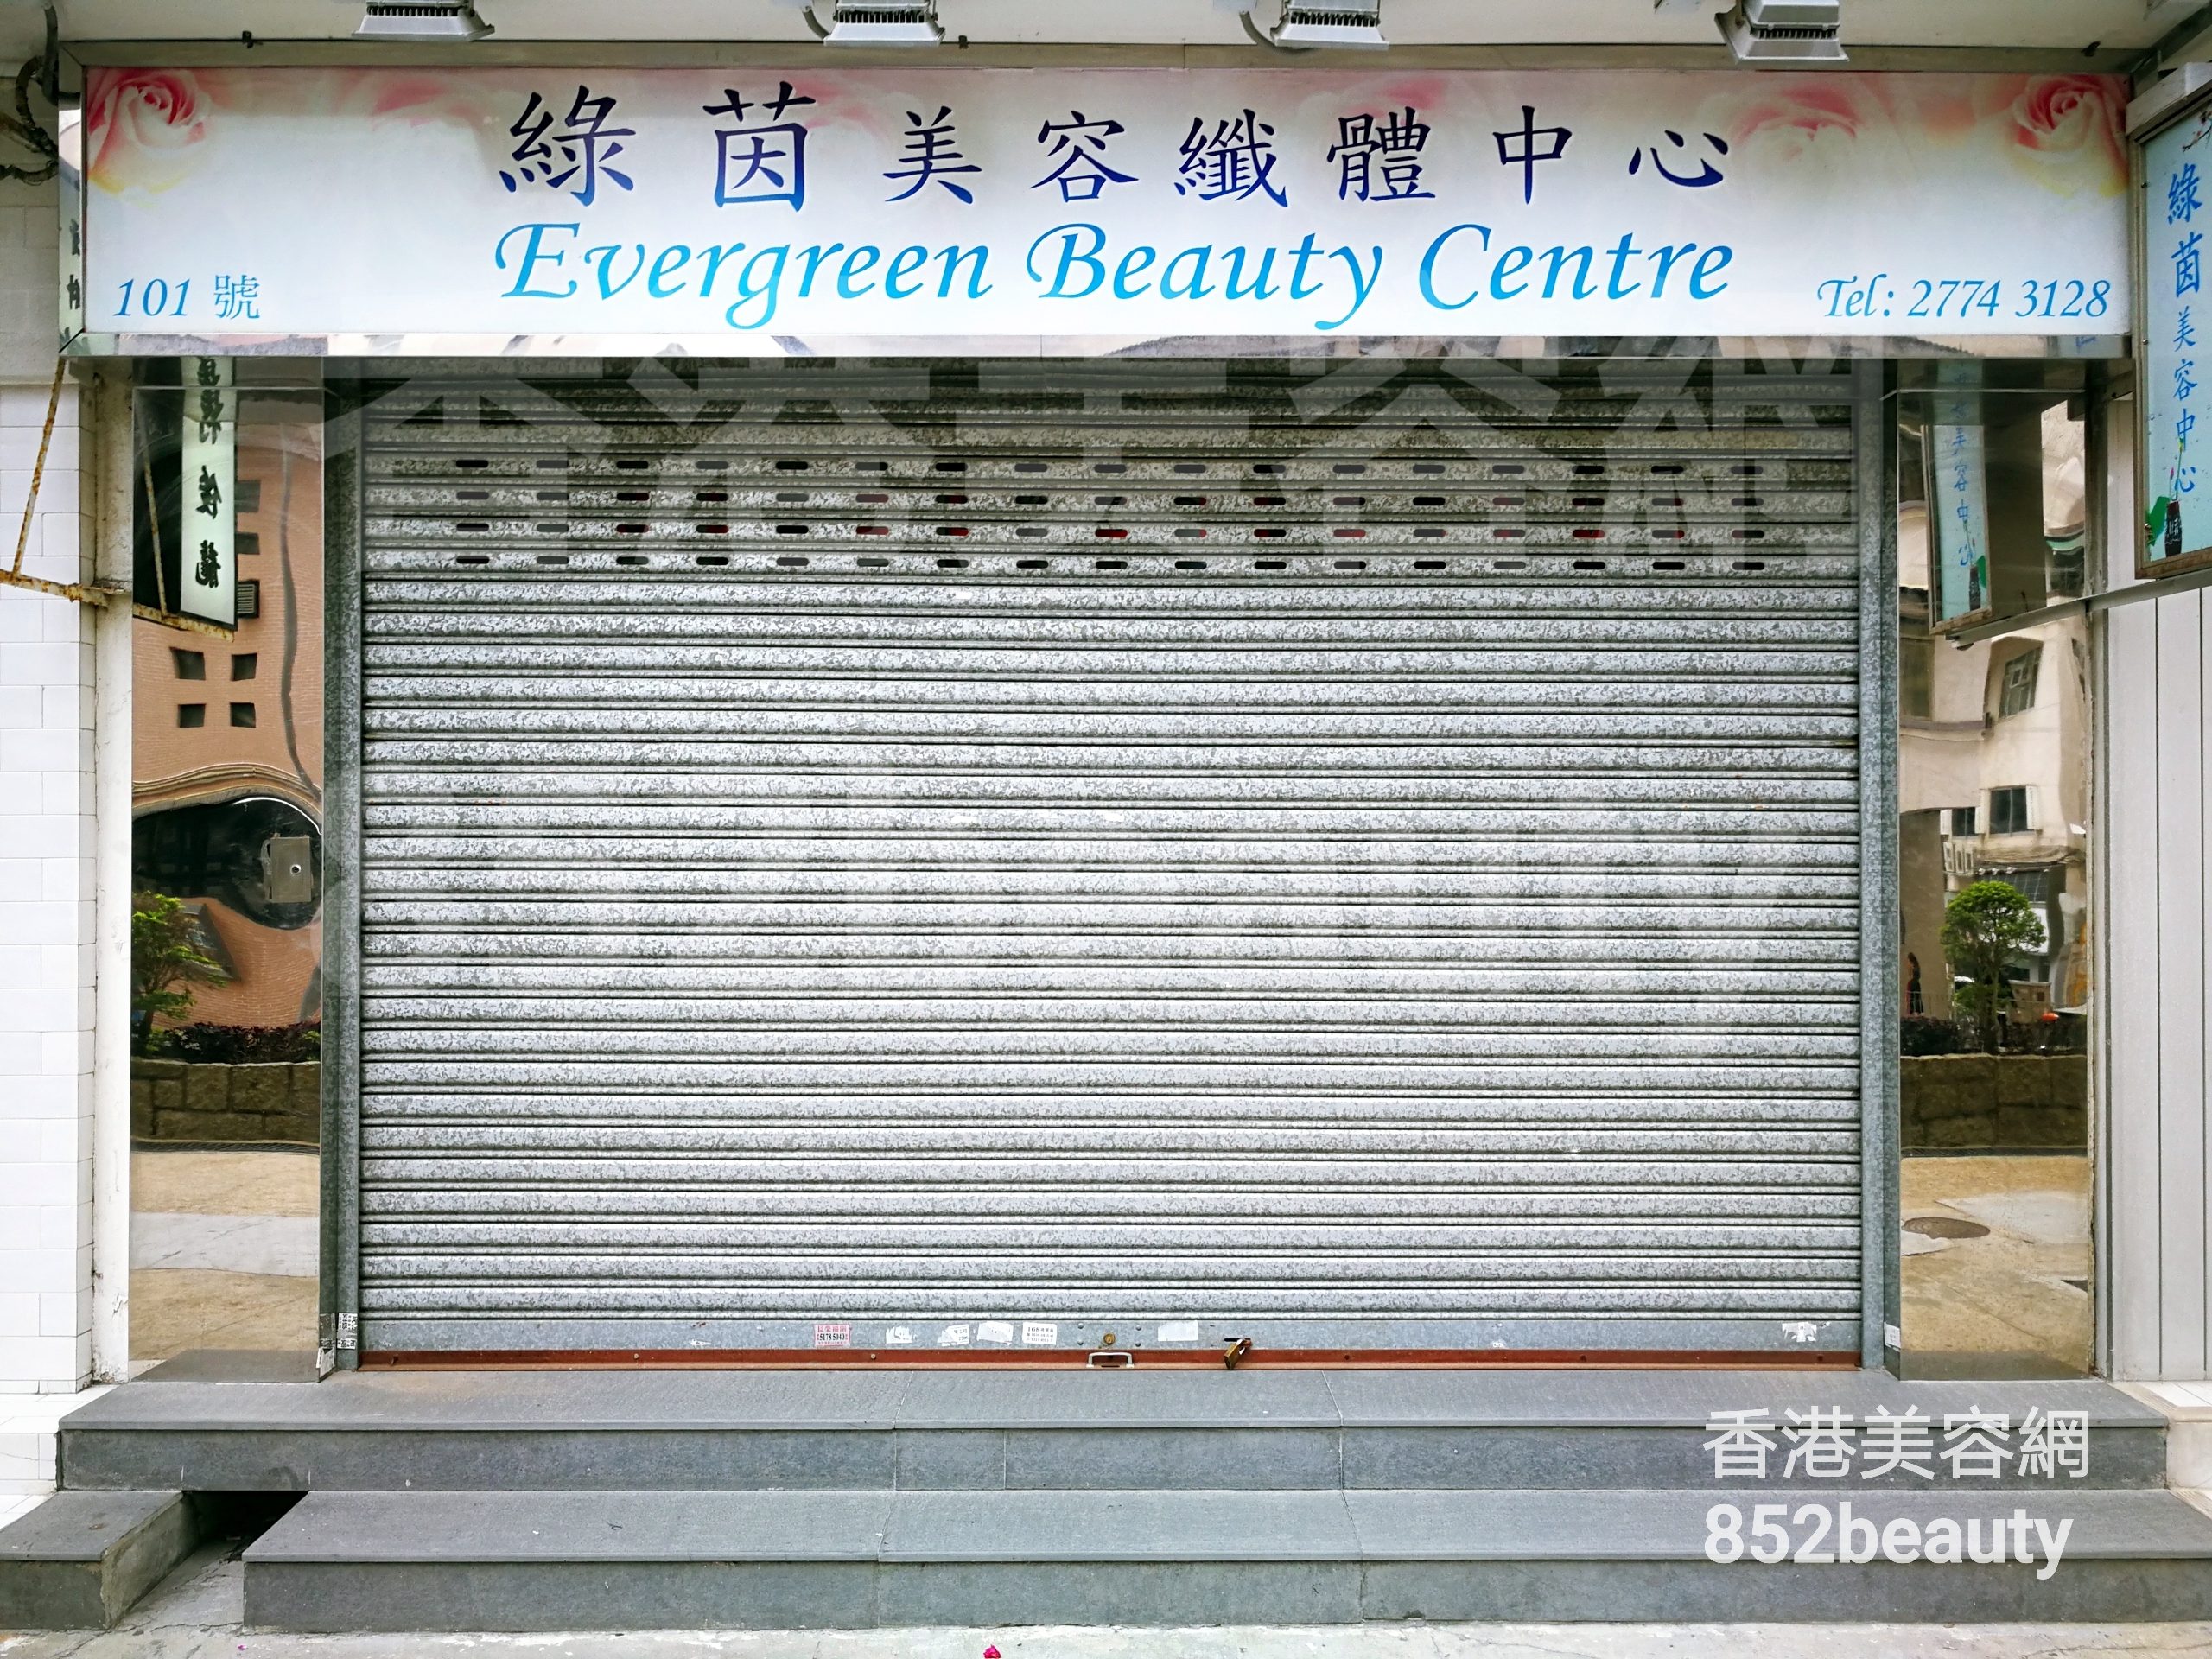 香港美容網 Hong Kong Beauty Salon 美容院 / 美容師: 綠茵美容纖體中心